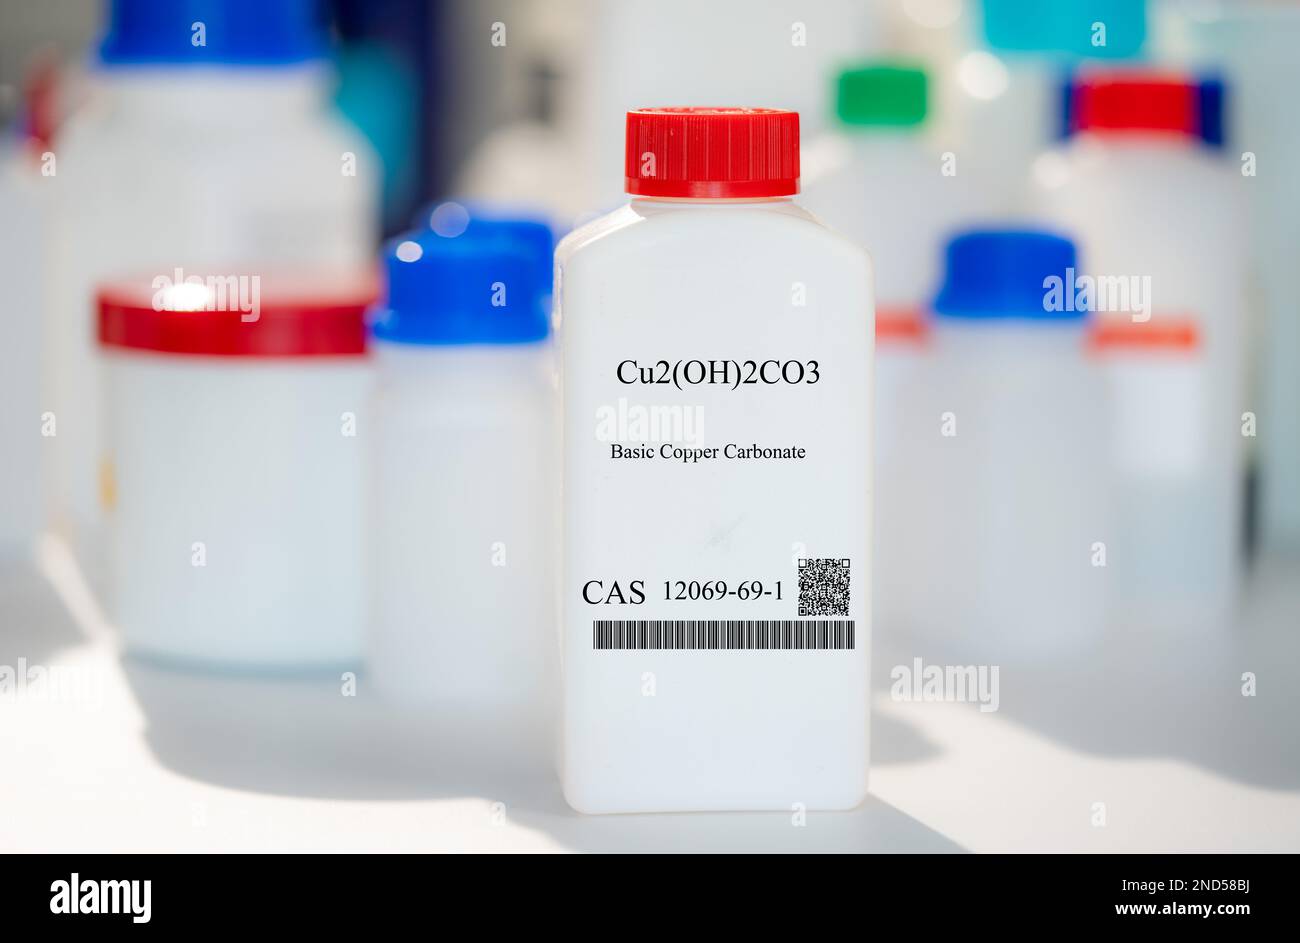 Cu2(OH)2CO3 basisches Kupfercarbonat CAS 12069-69-1 chemische Substanz in weißen Kunststoffverpackungen für Laboratorien Stockfoto